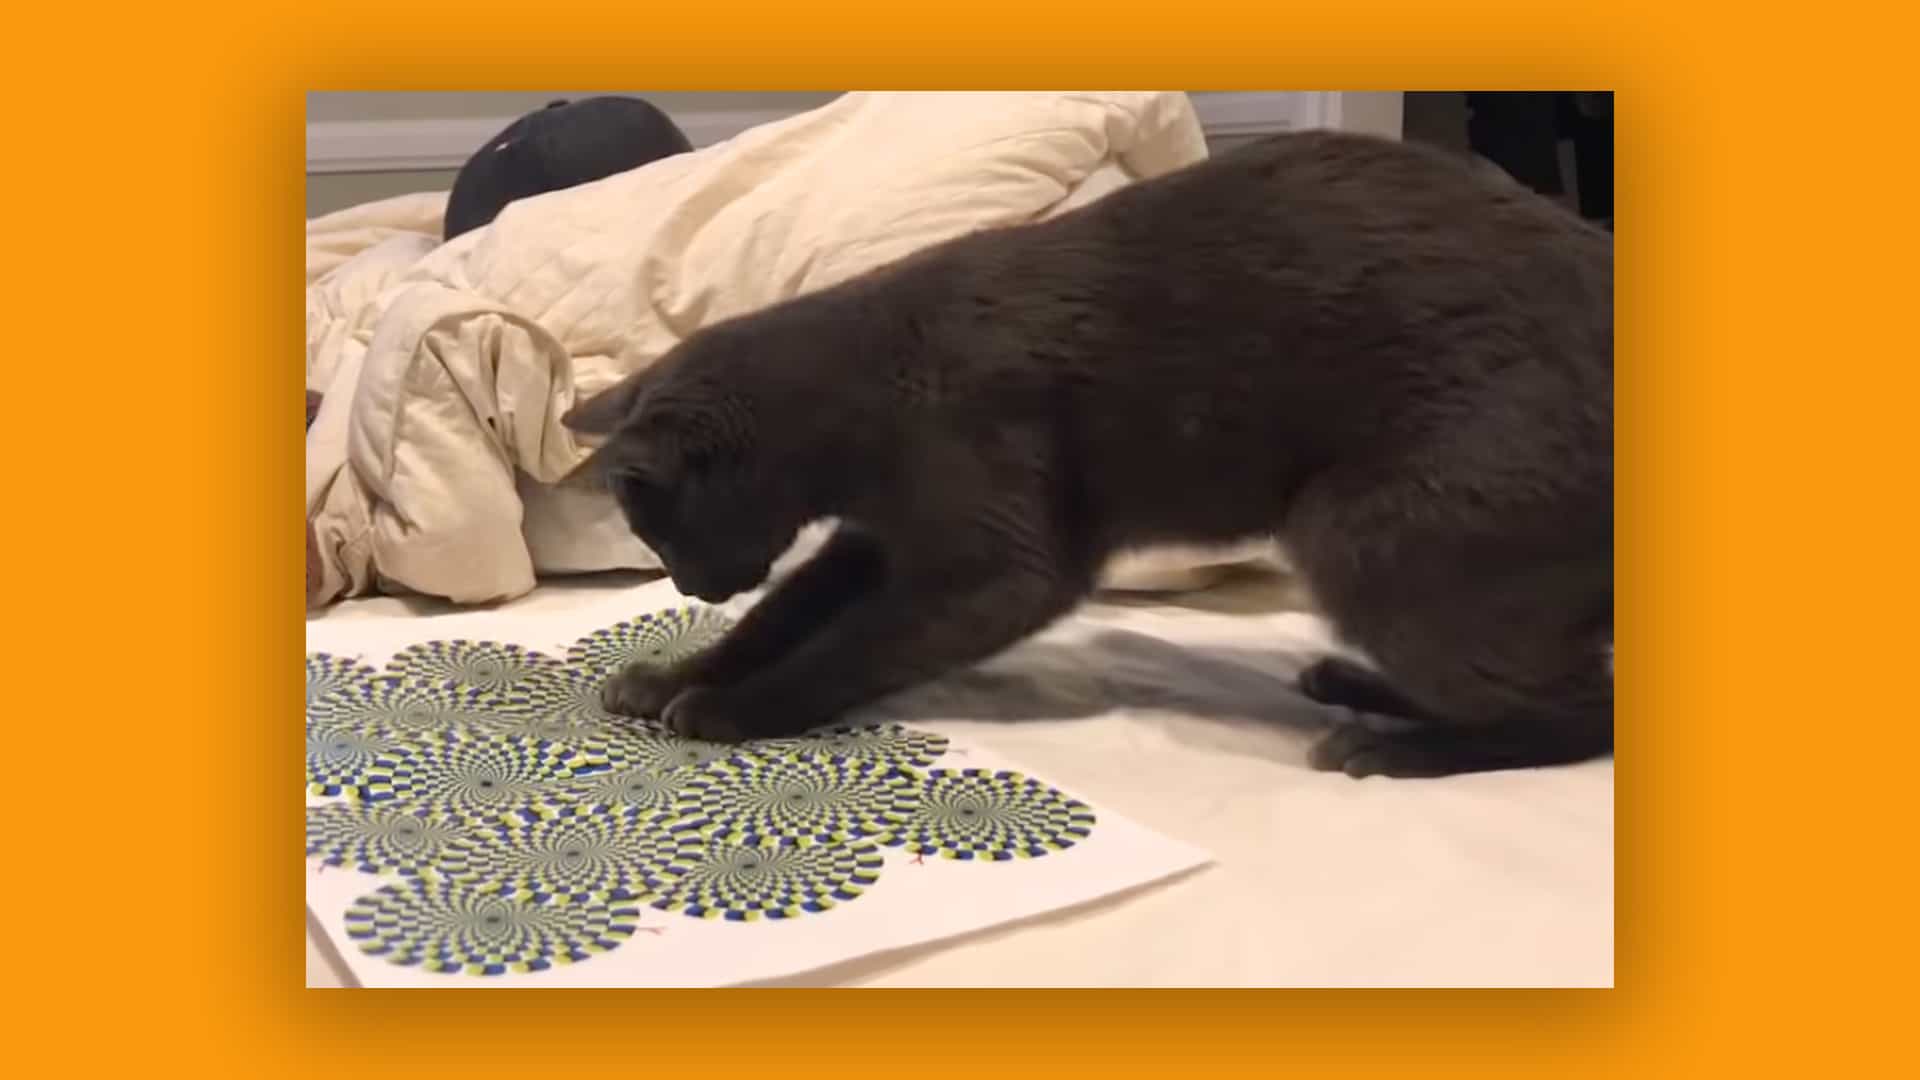 De todos modos, aquí hay un video de un gato reaccionando a una ilusión óptica.